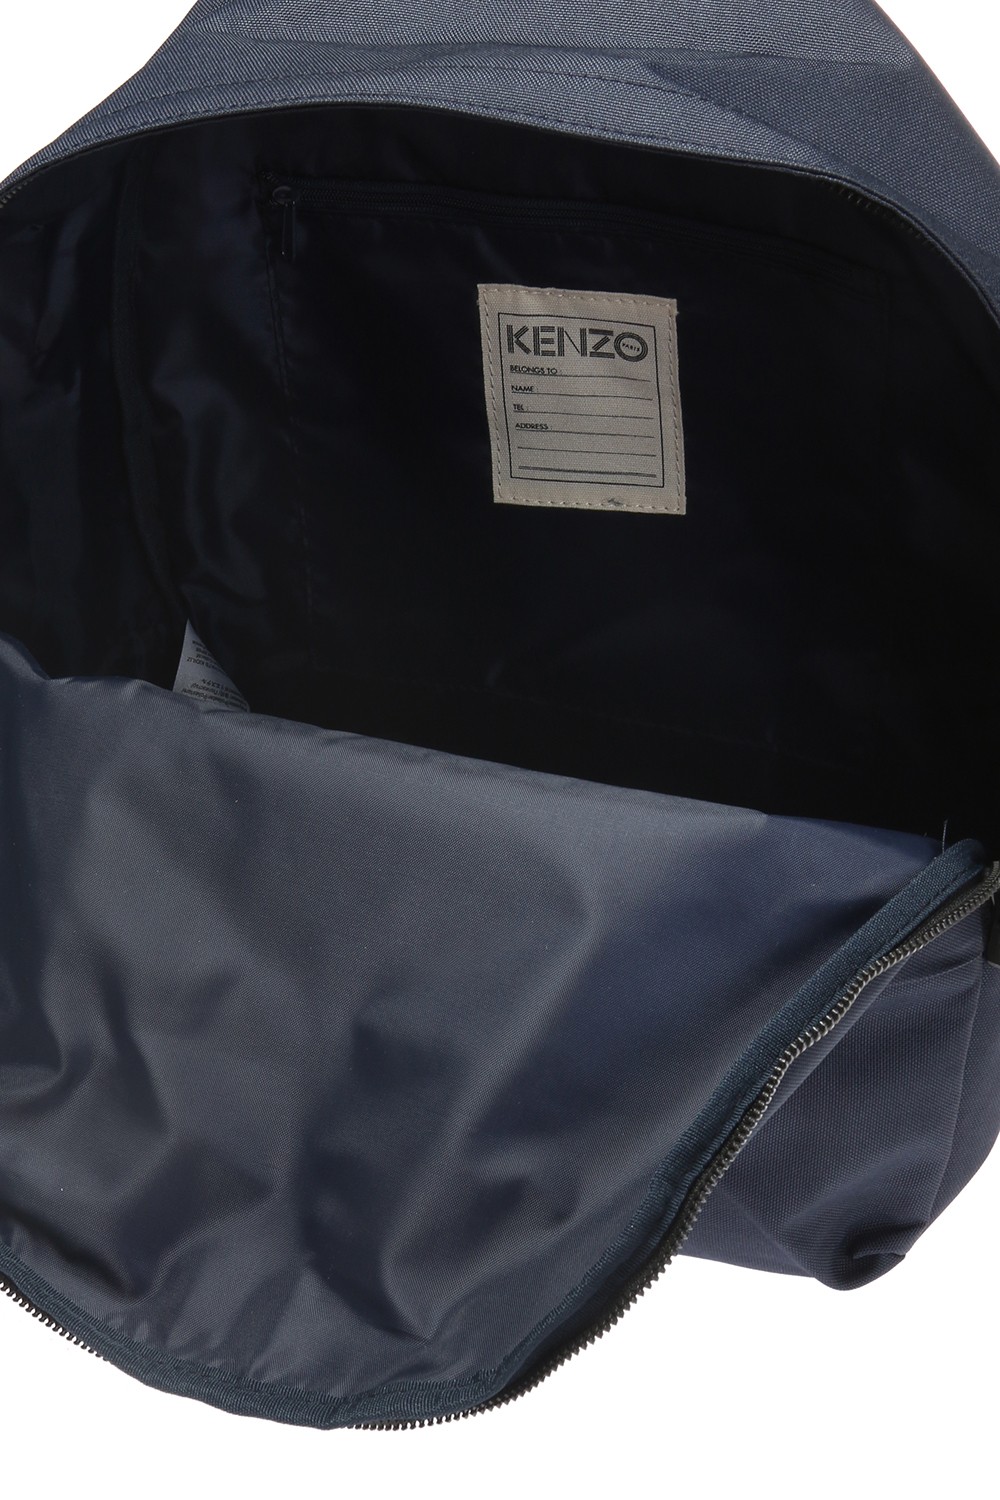 kids kenzo backpack